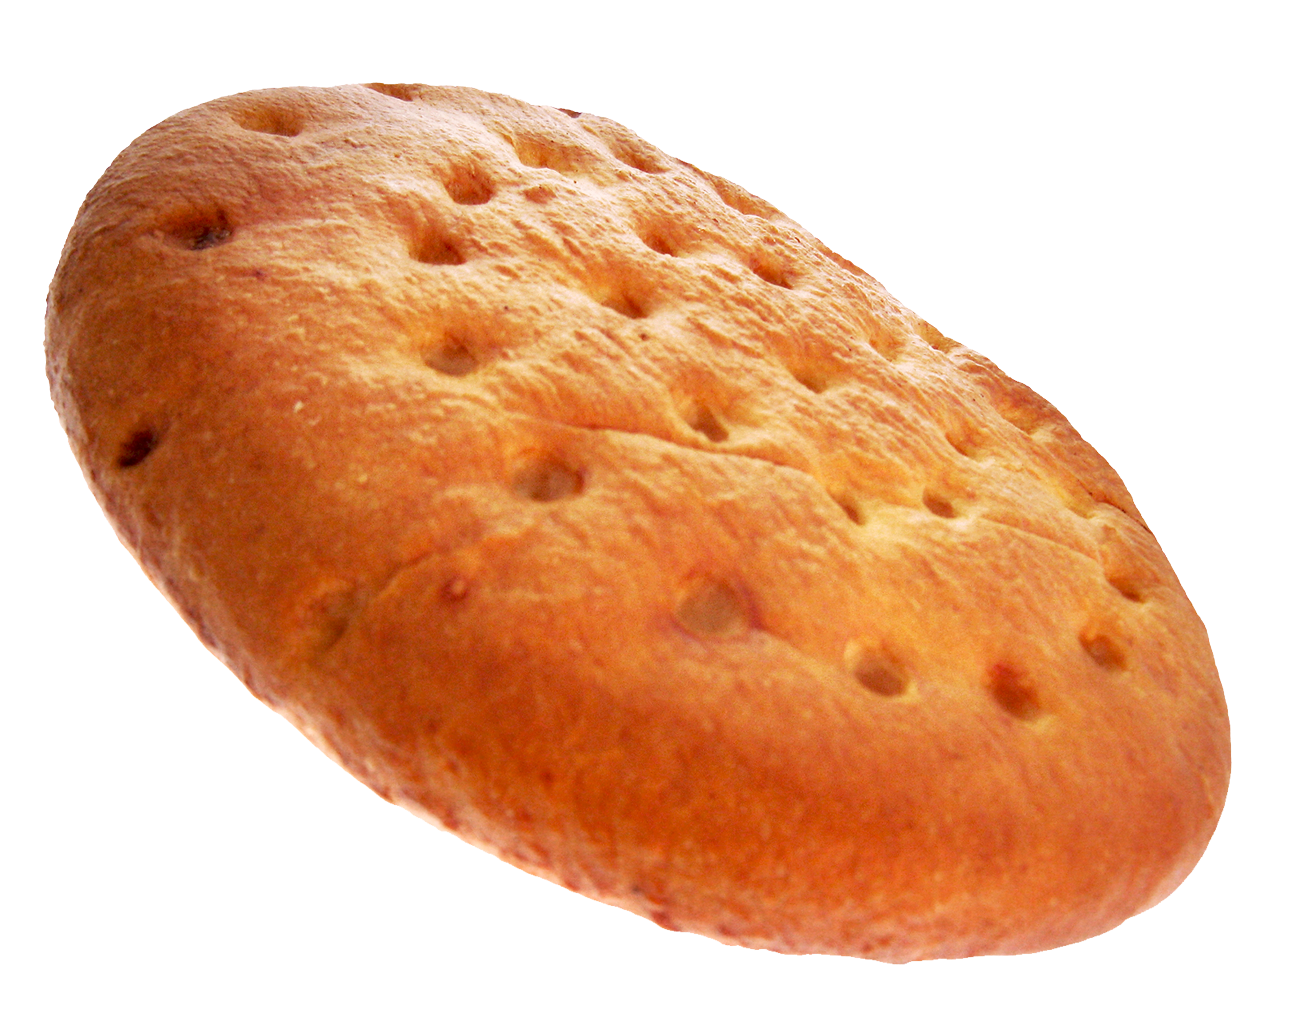 Roti isi kukus